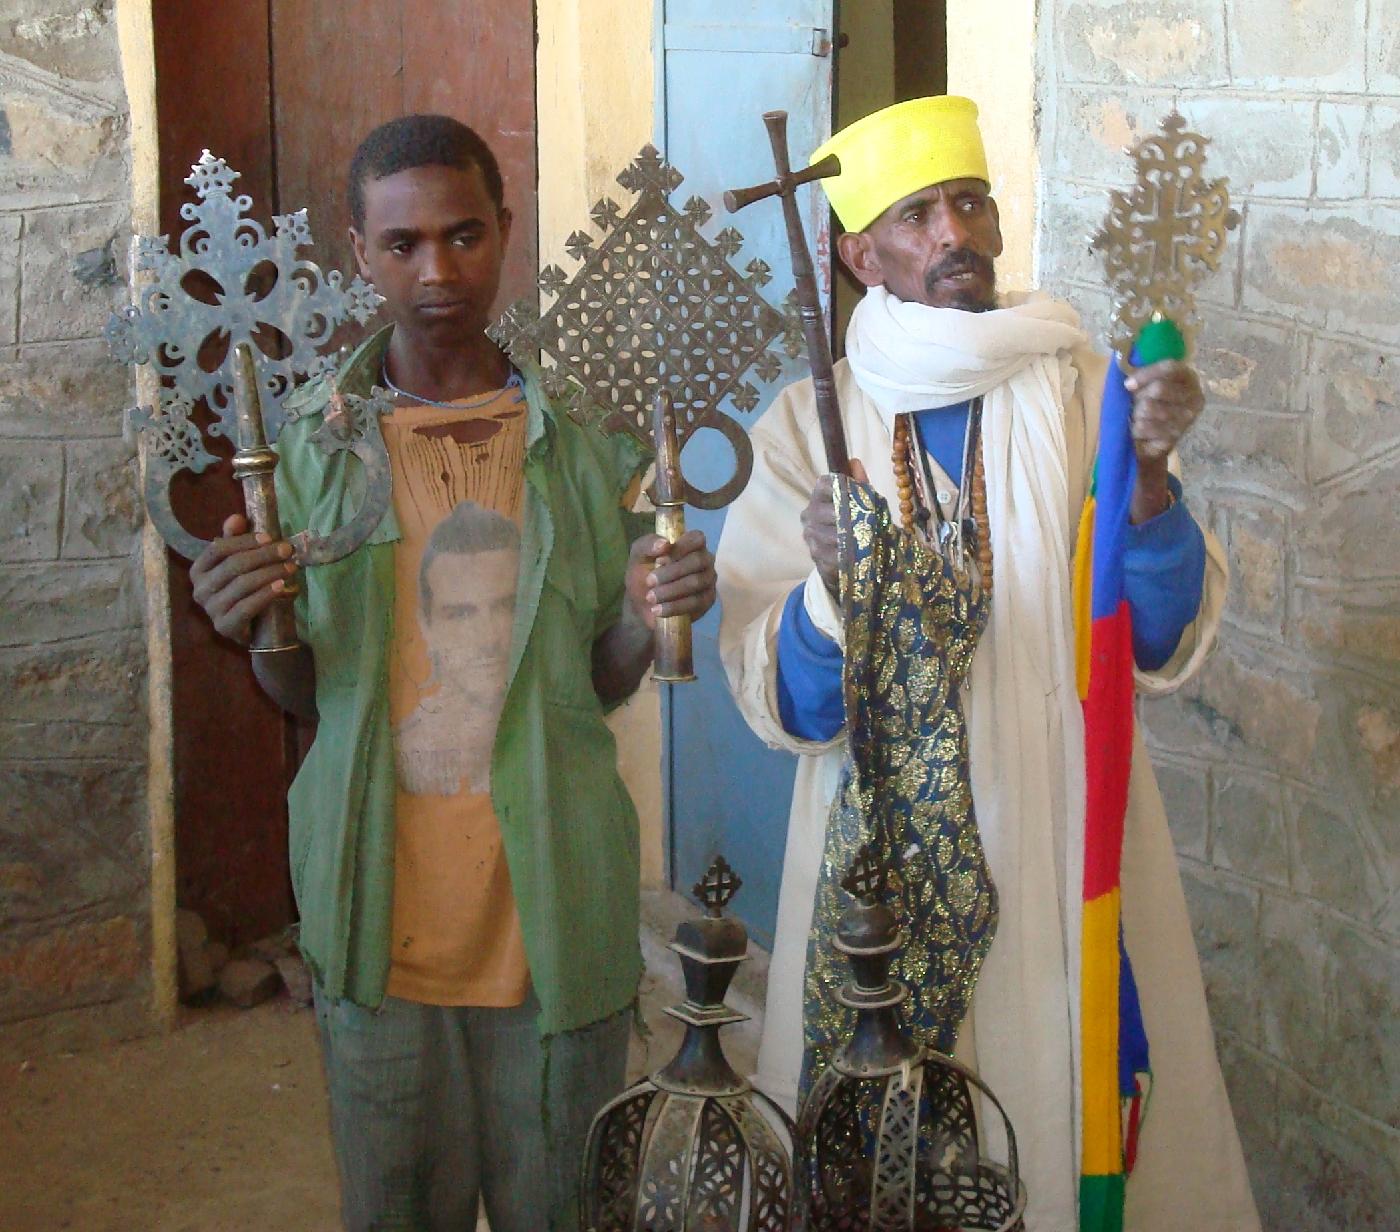 DSC032000.jpg - Labba et son assistant montrent firement des croix et des couronnes axoumites